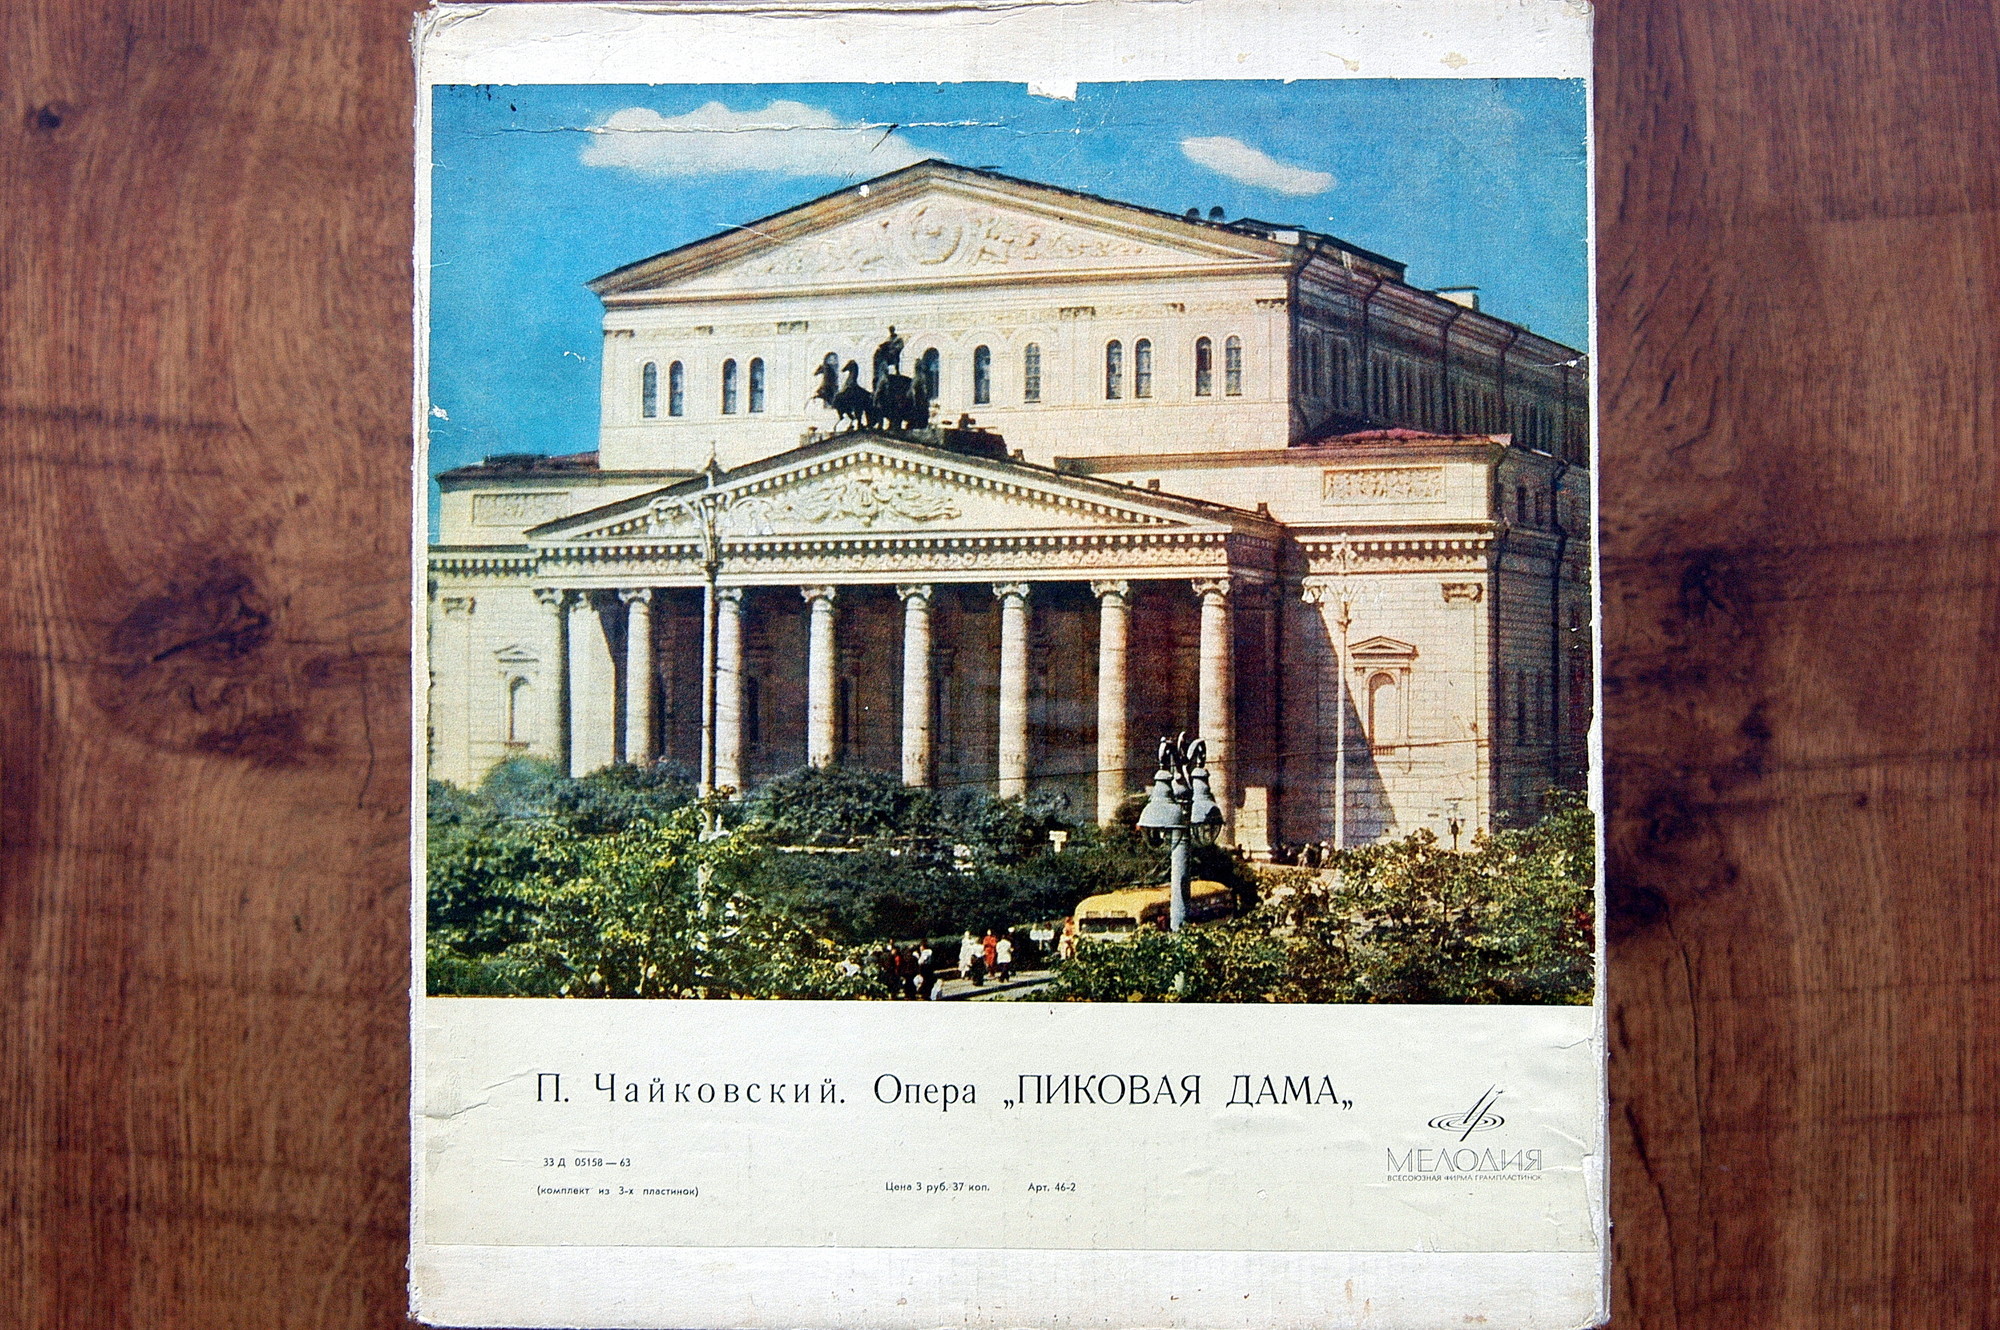 П. ЧАЙКОВСКИЙ (1840-1893): «Пиковая дама», опера в 3 д.